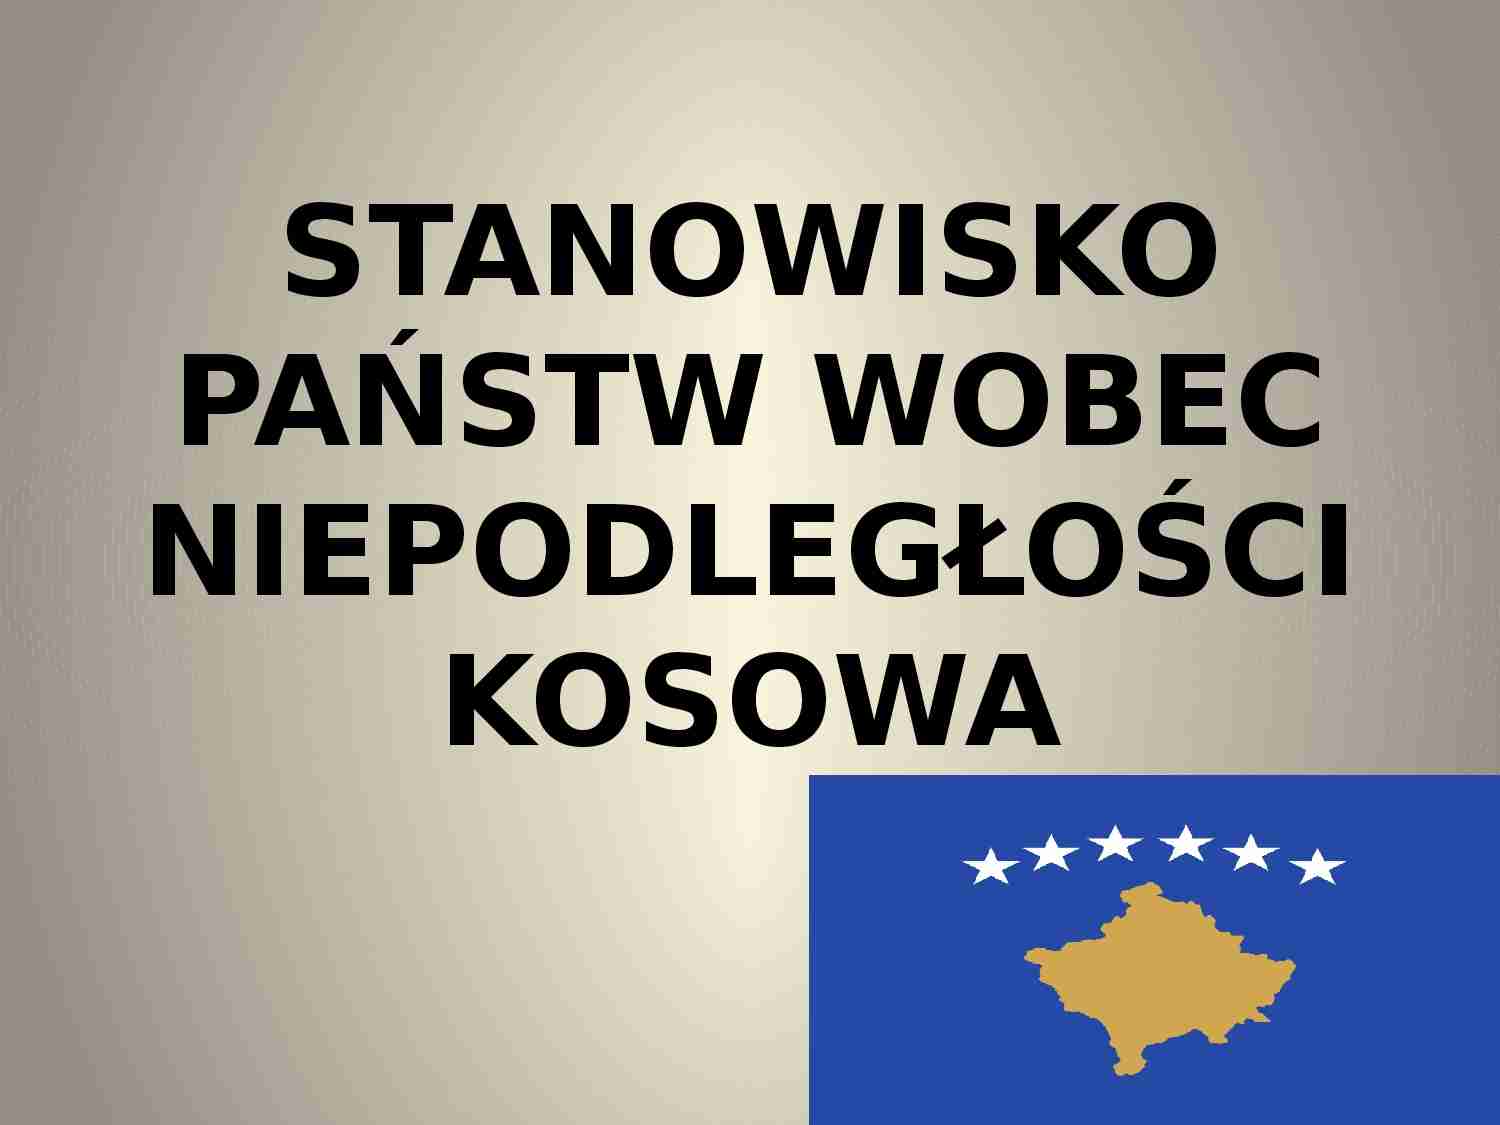 Stanowisko państw wobec niepodległości Kosowa-prezentacja - strona 1